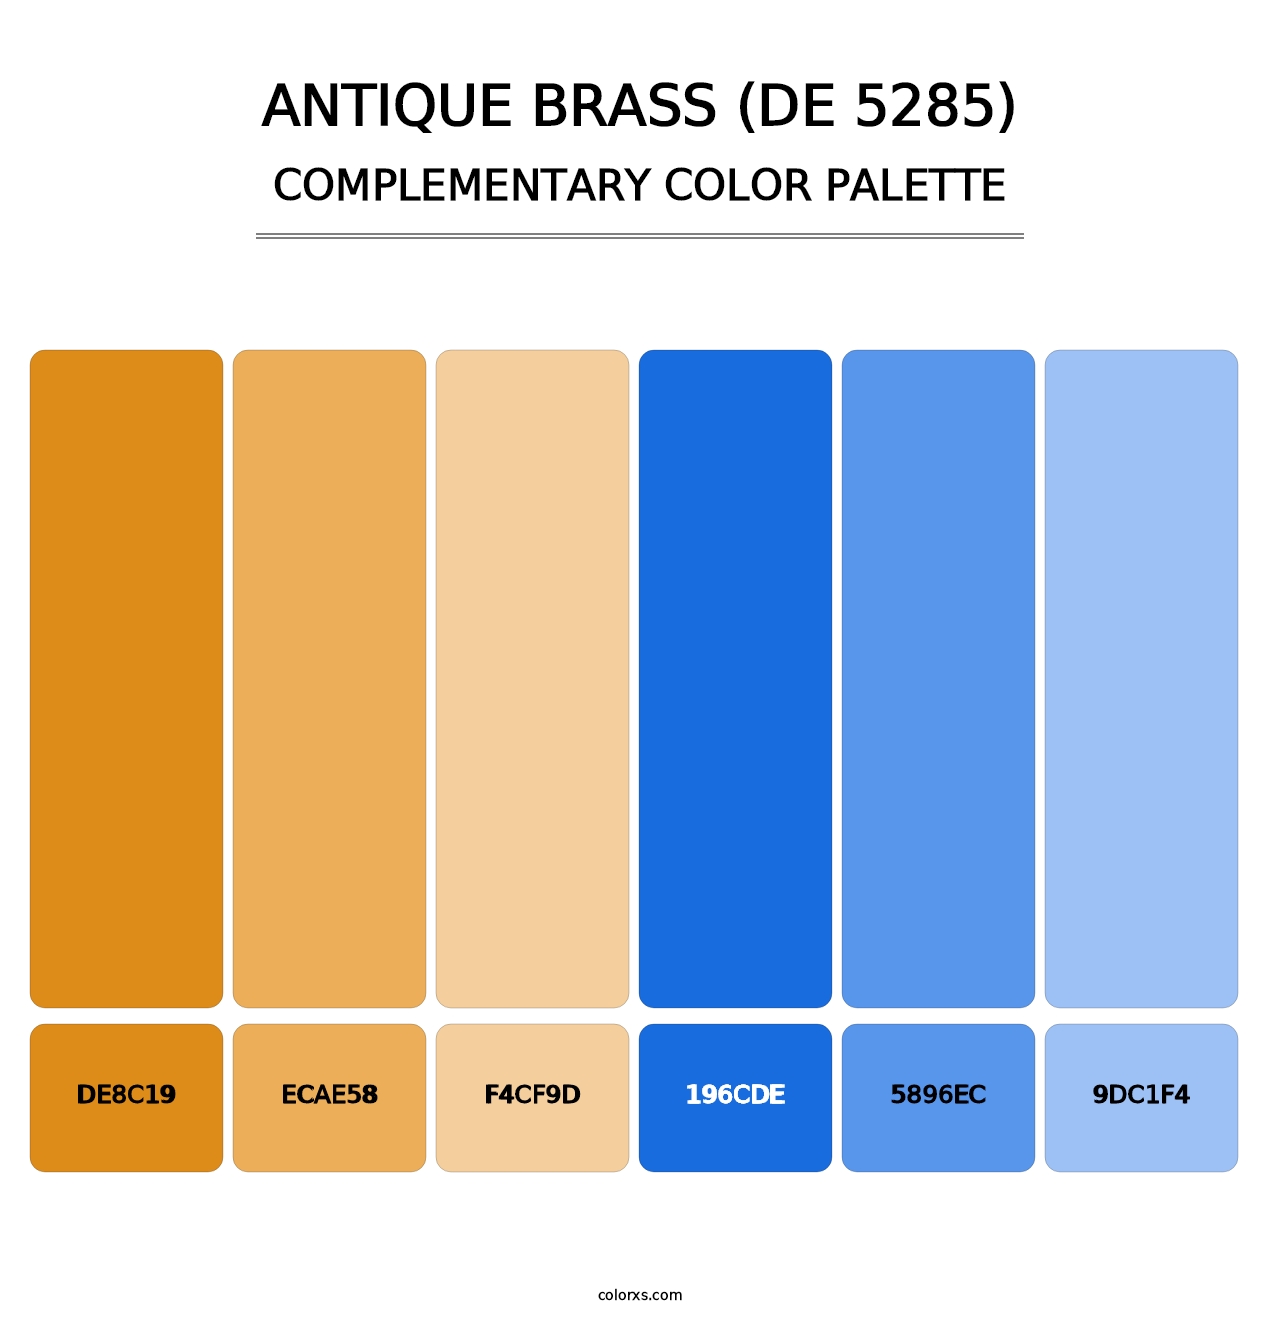 Antique Brass (DE 5285) - Complementary Color Palette